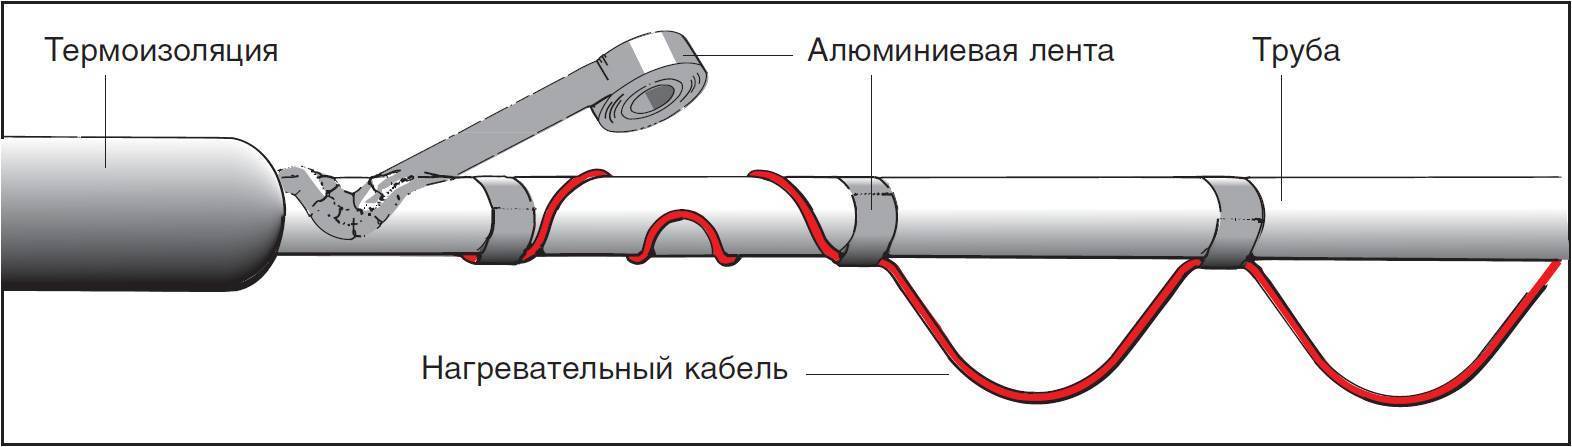 Греющий кабель для канализации - виды, характеристики, как работает, выбор, инструкция как установить и правила эксплуатации